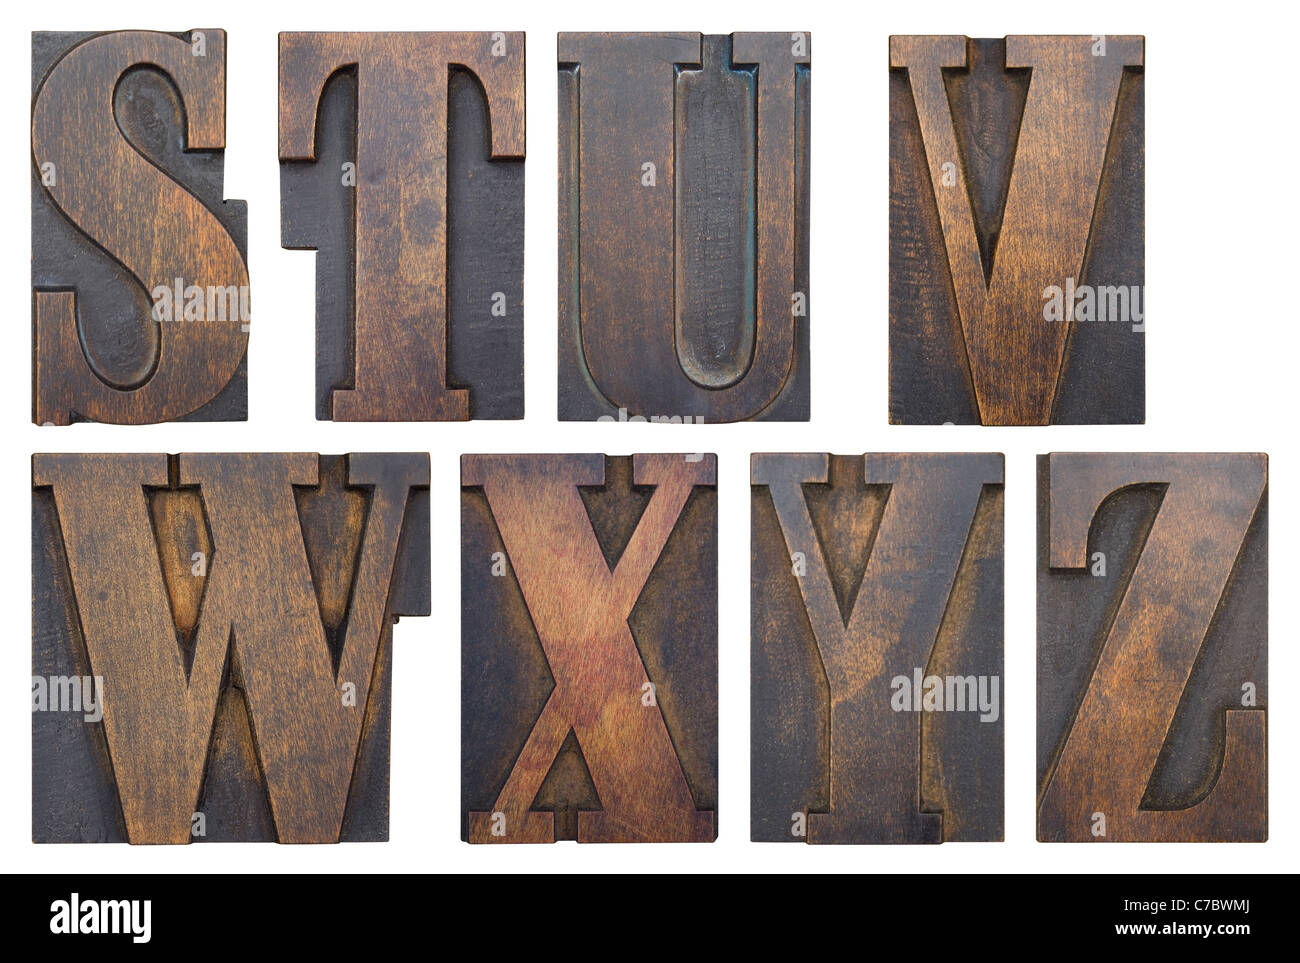 Partie d'un alphabet dans la série de l'imprimante antique lettres sur bois. Veuillez voir mon portefeuille pour l'alphabet complet. Banque D'Images